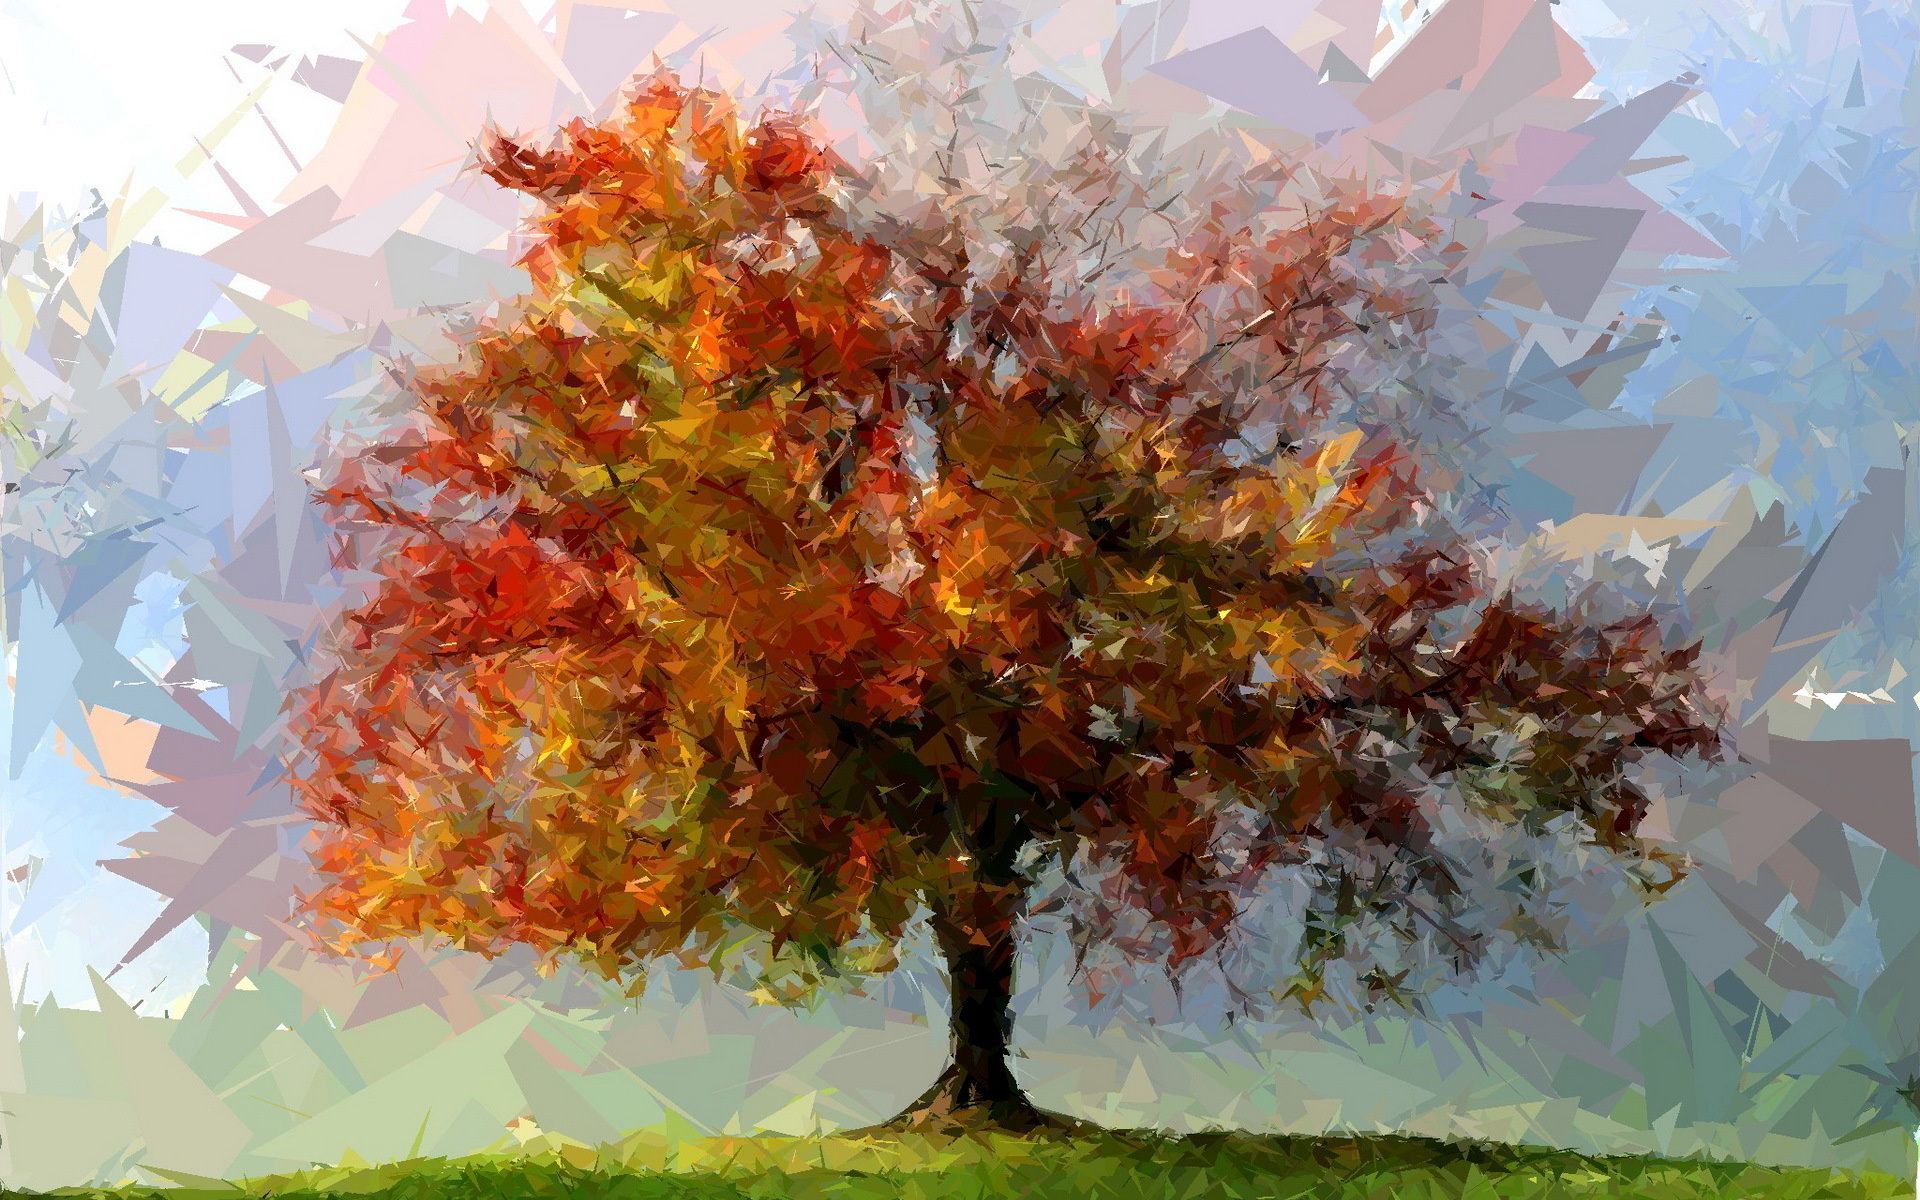 نقاشی هنری تک درخت پاییزی با برگ های قرمز و نارنجی 